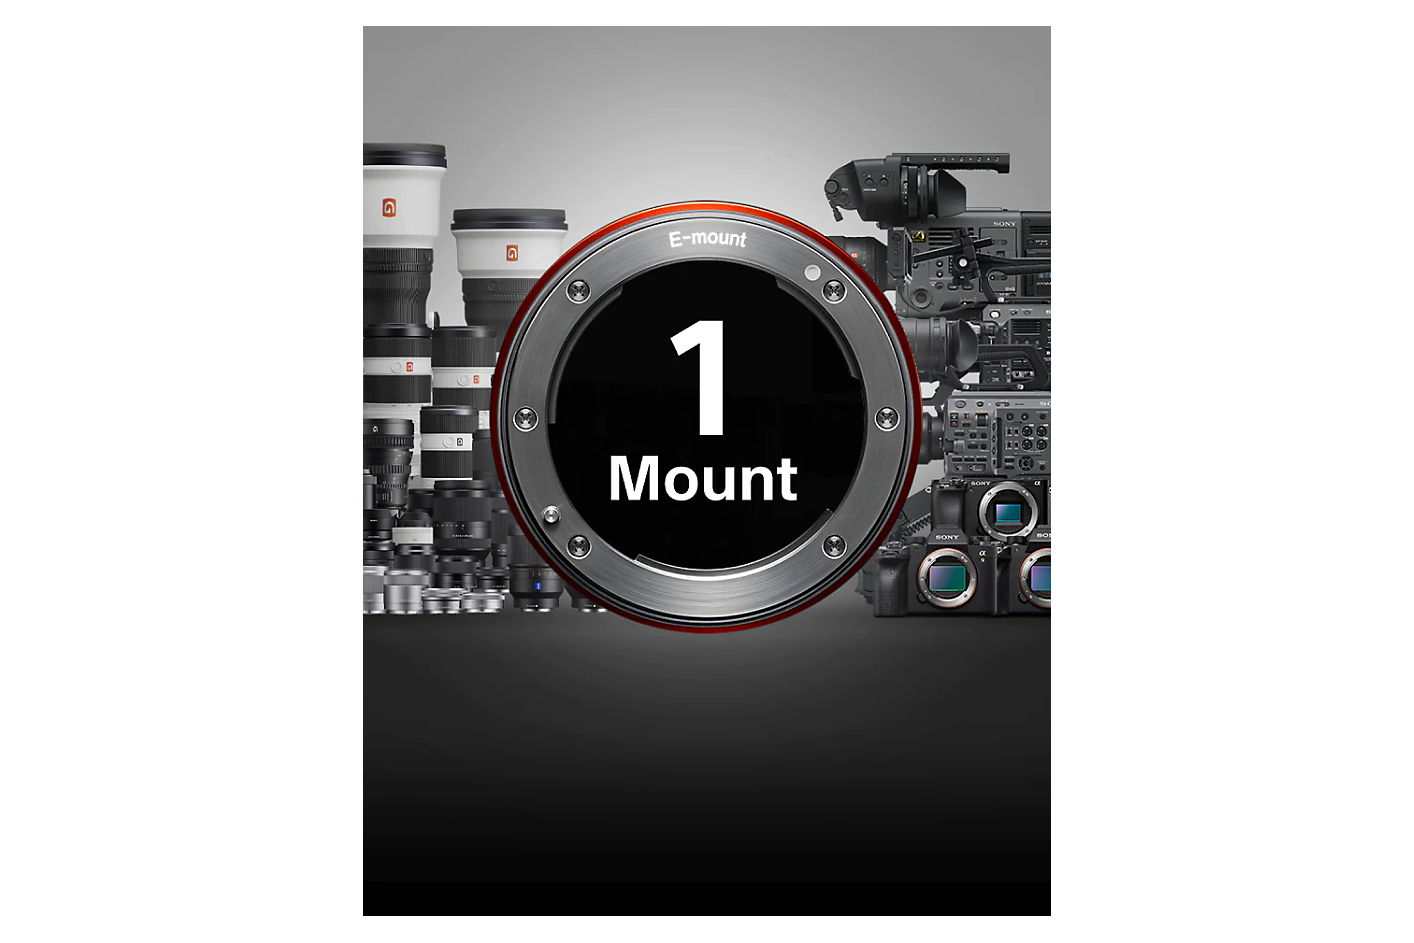 Зборовите „1 mount“ се прикажани во приклучок за објективи, а покрај него има повеќе објективи и фотоапарати наспроти сива и црна заднина.